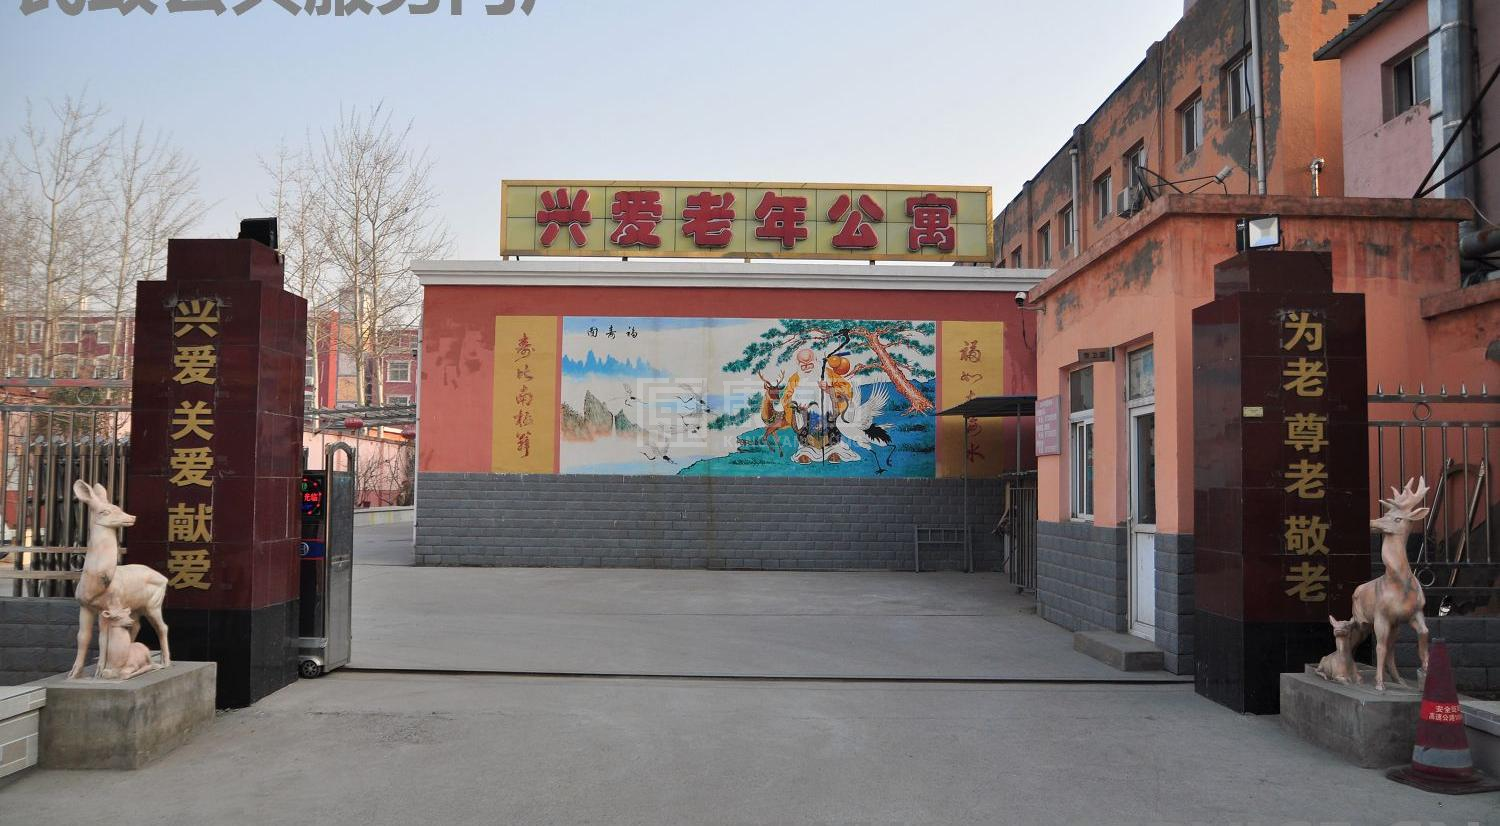 北京市朝阳区兴爱养老院服务项目图4让长者主动而自立地生活